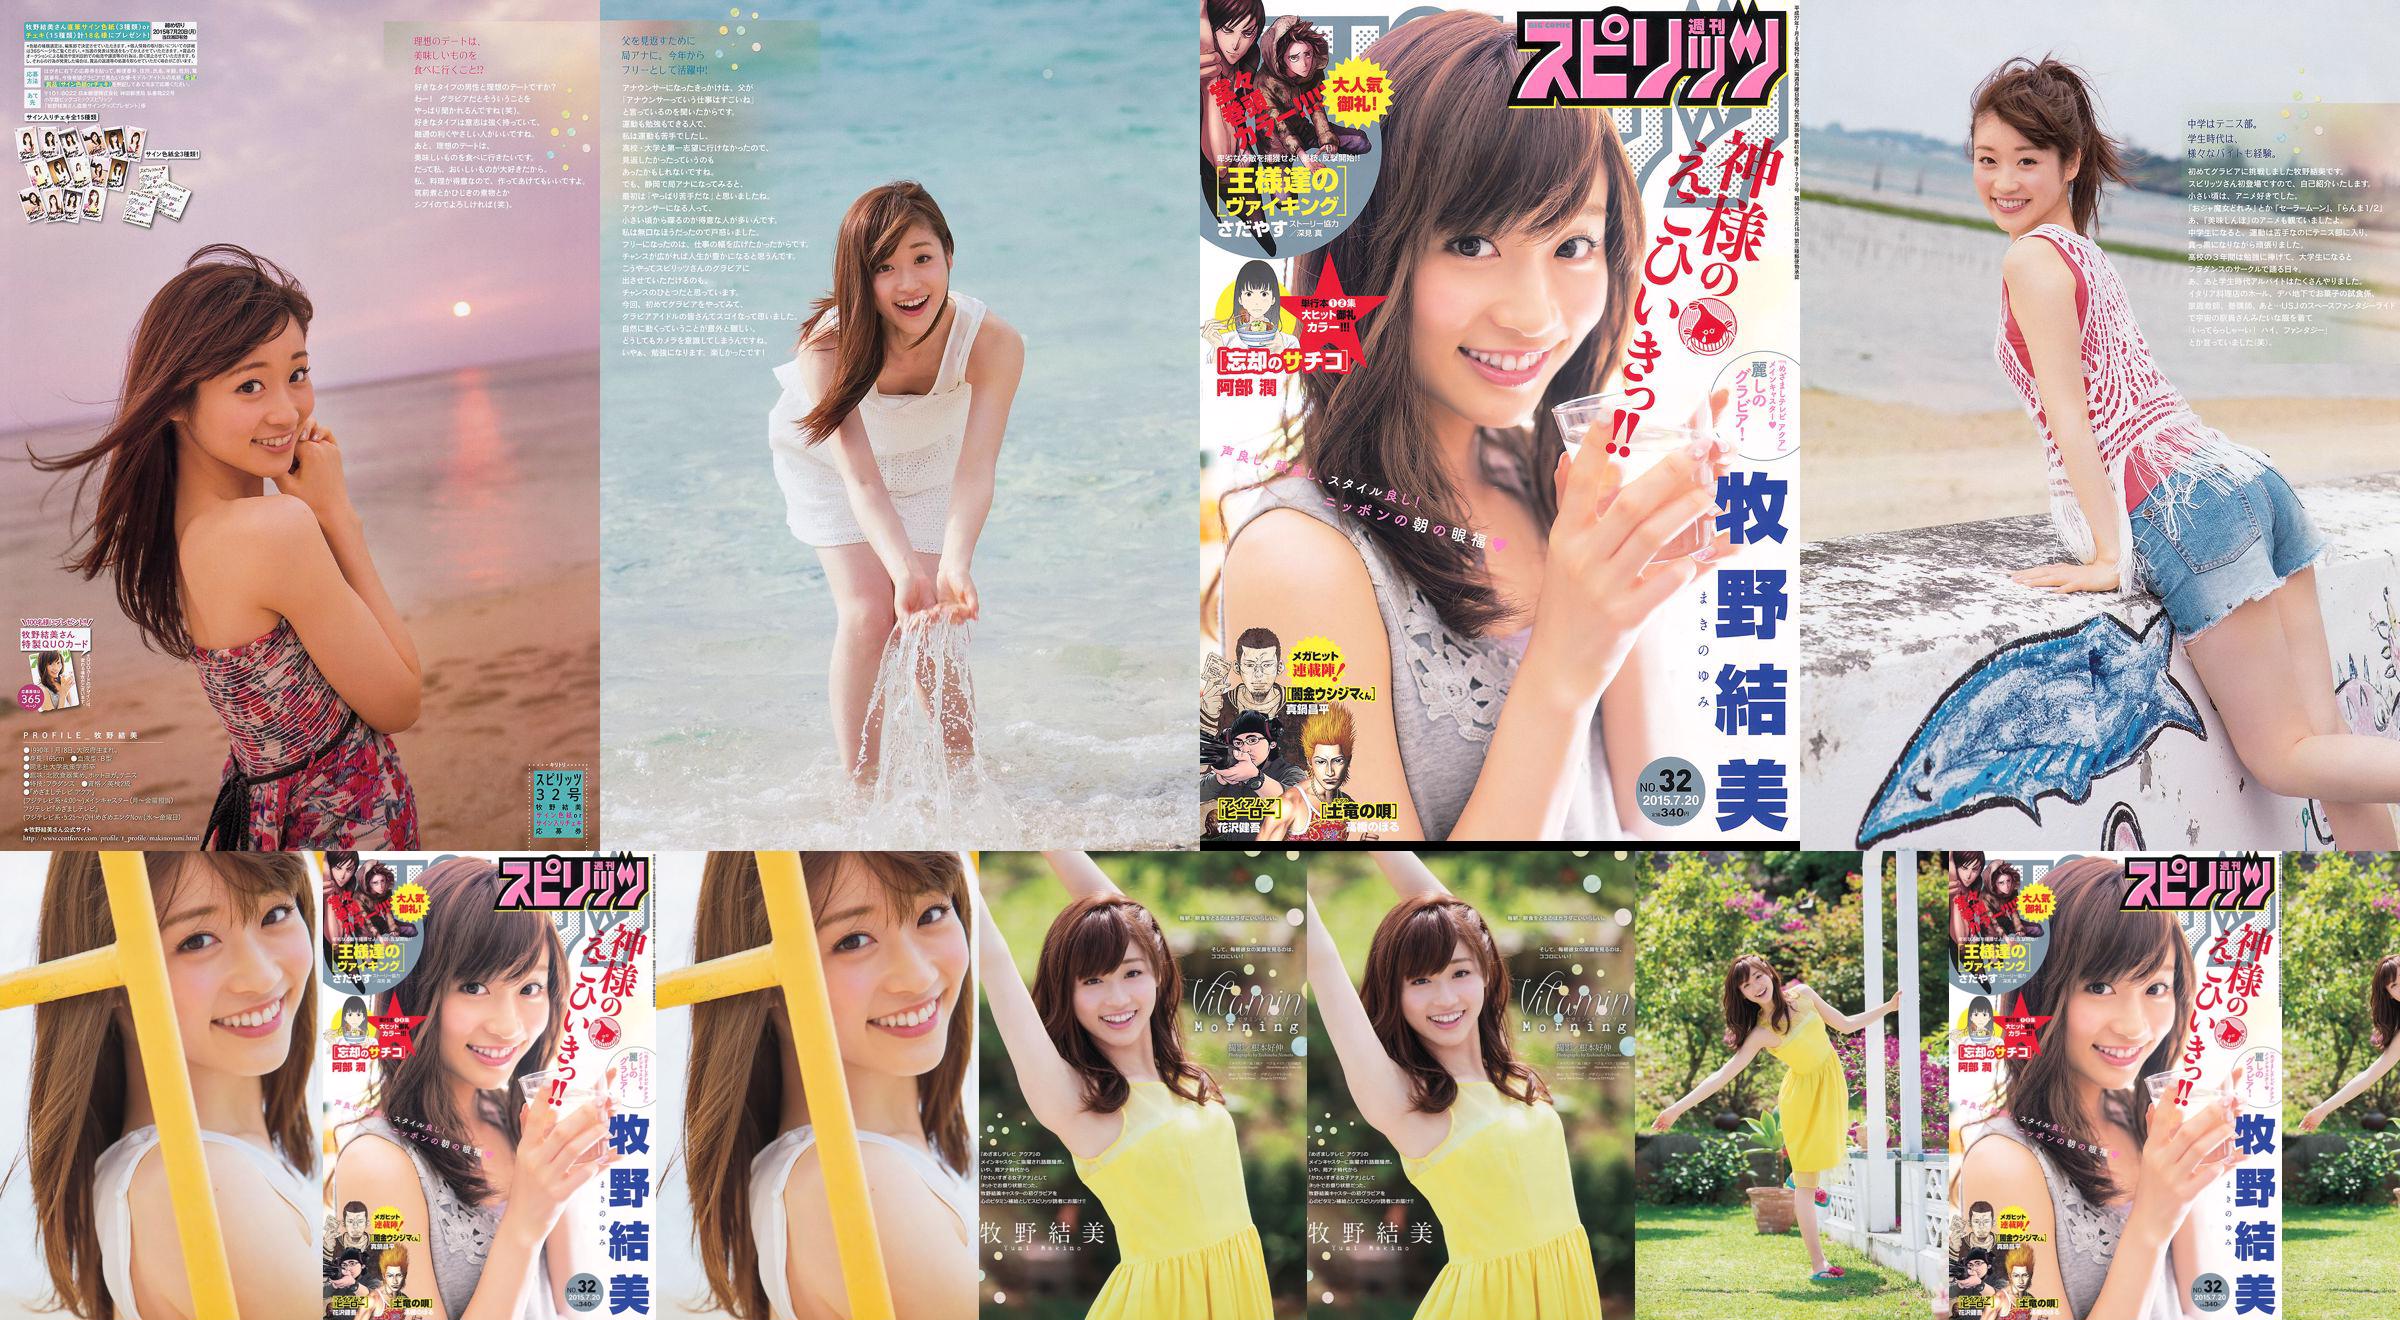 [Weekly Big Comic Spirits] Yumi Makino 2015 No.32 Photo Magazine No.9f2c9e Pagina 1